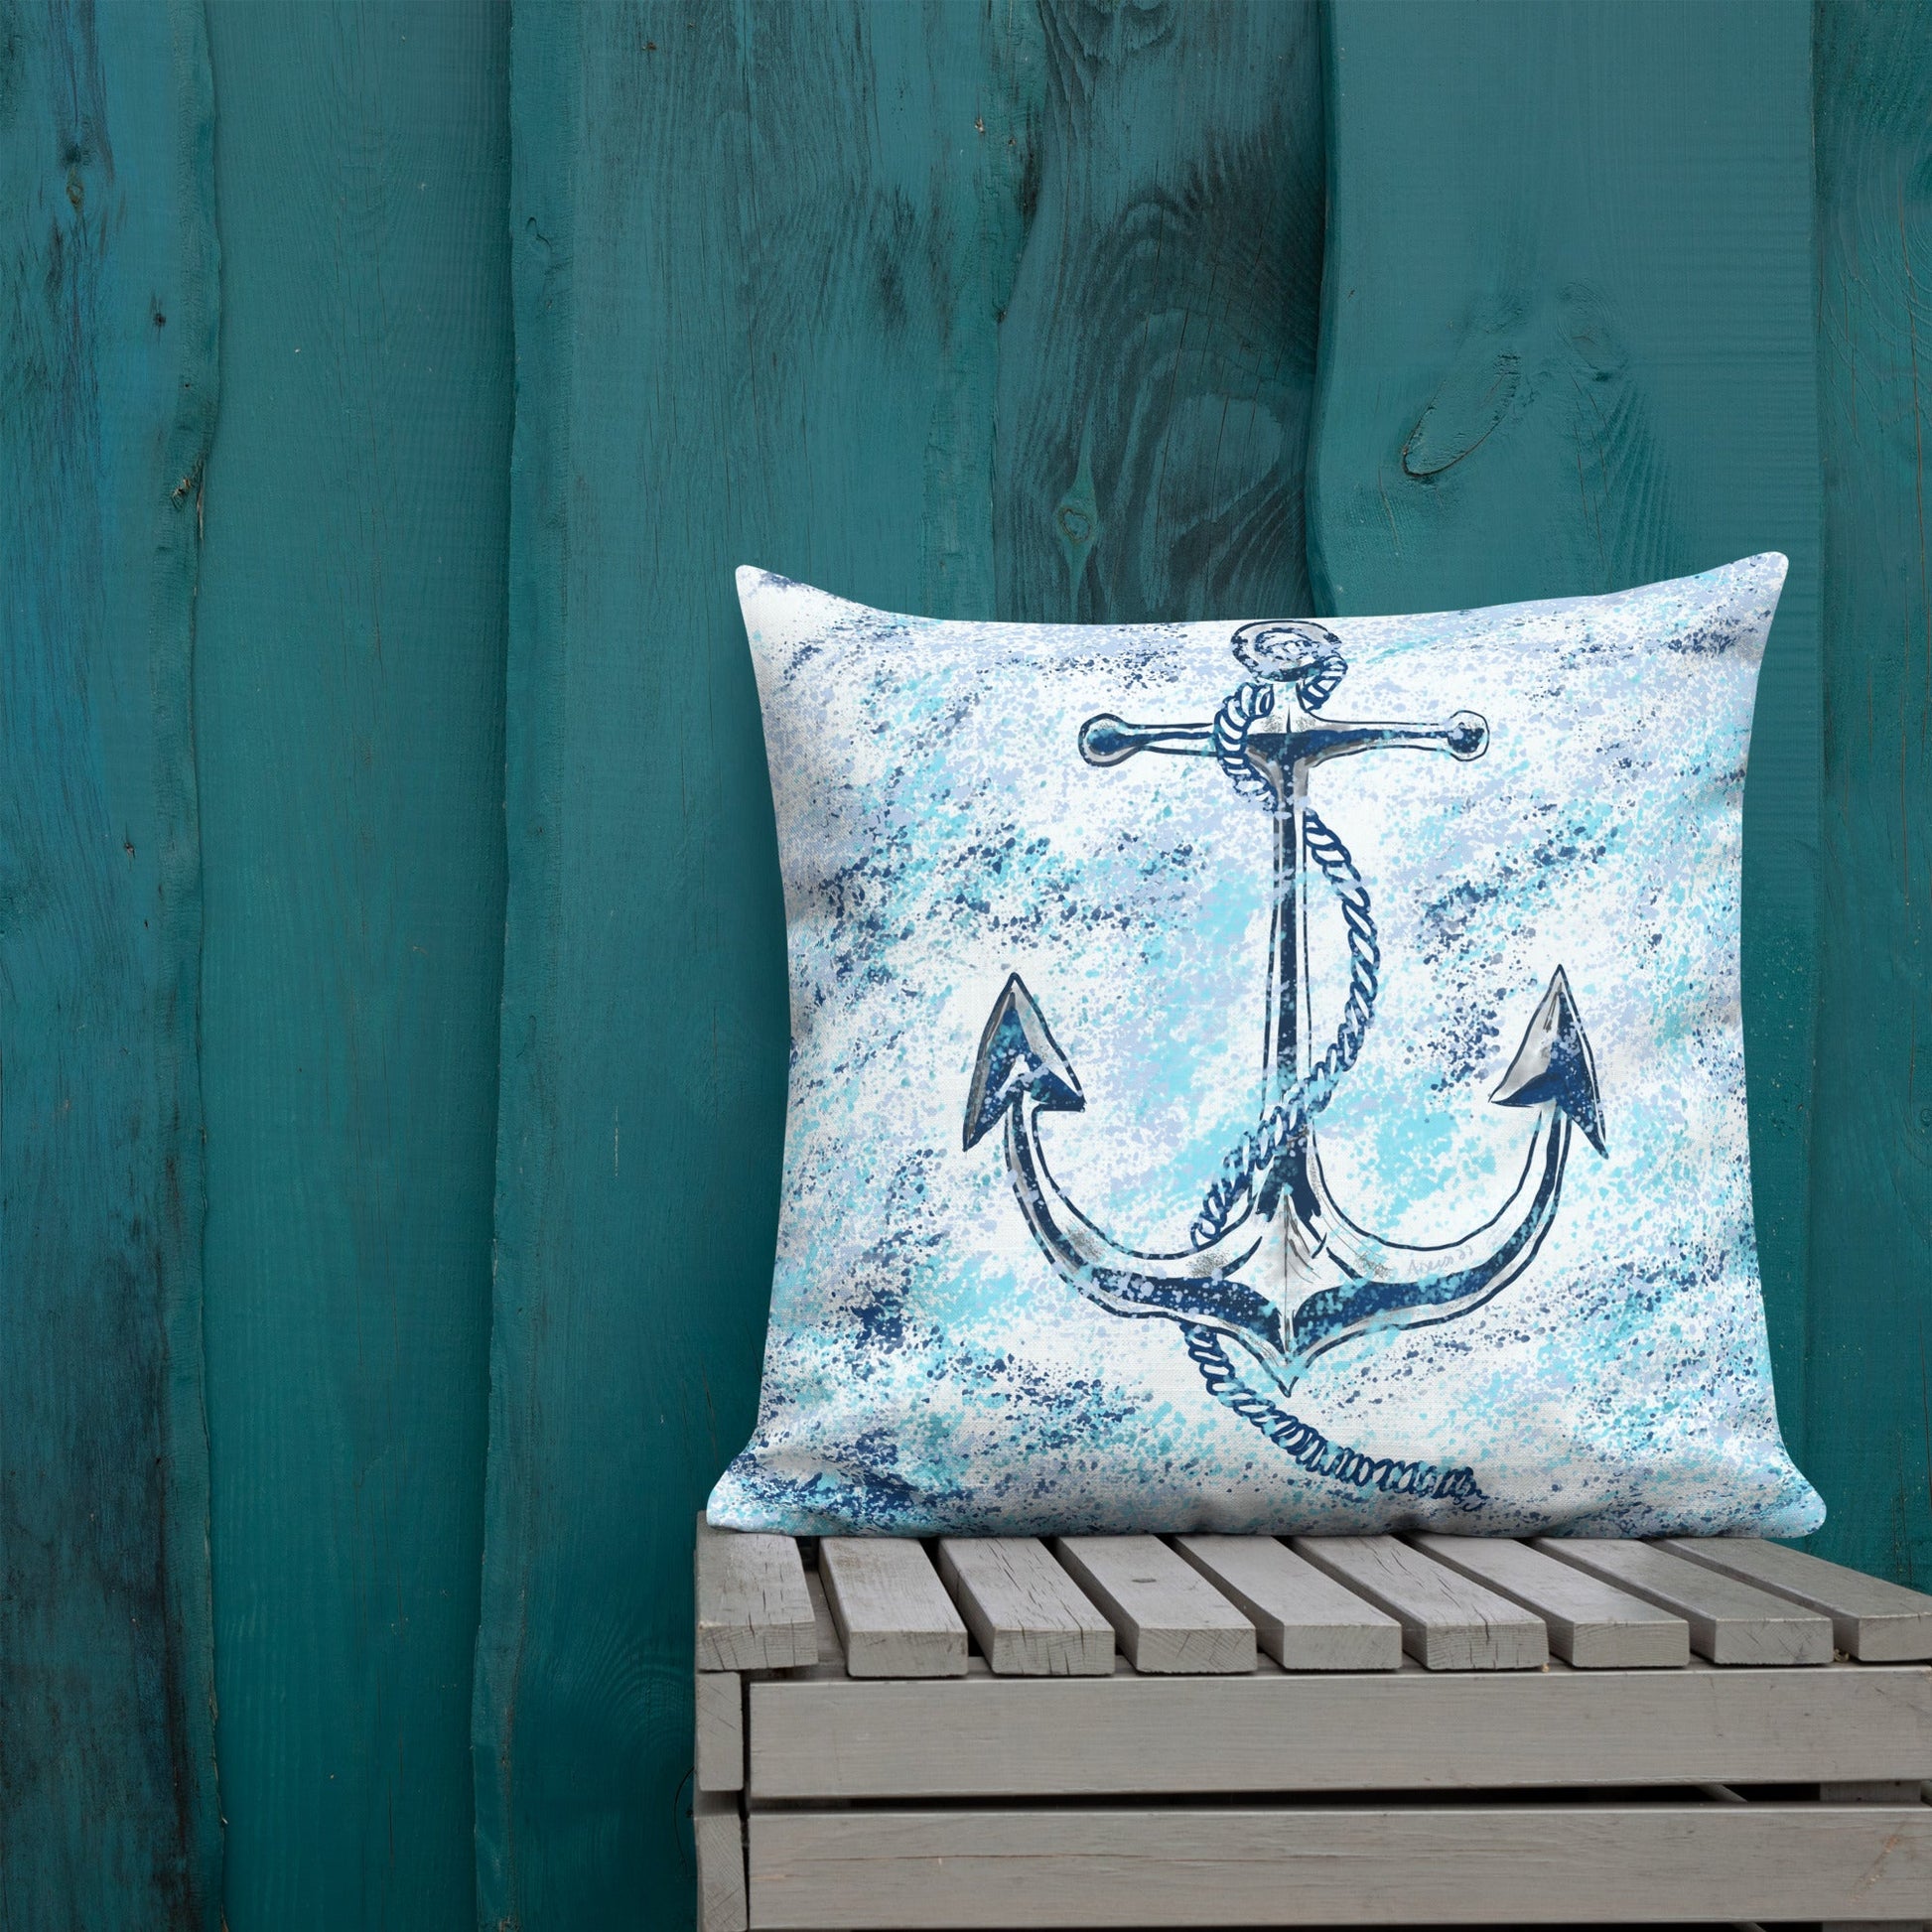 Anchor Premium Pillow - Blue Cava